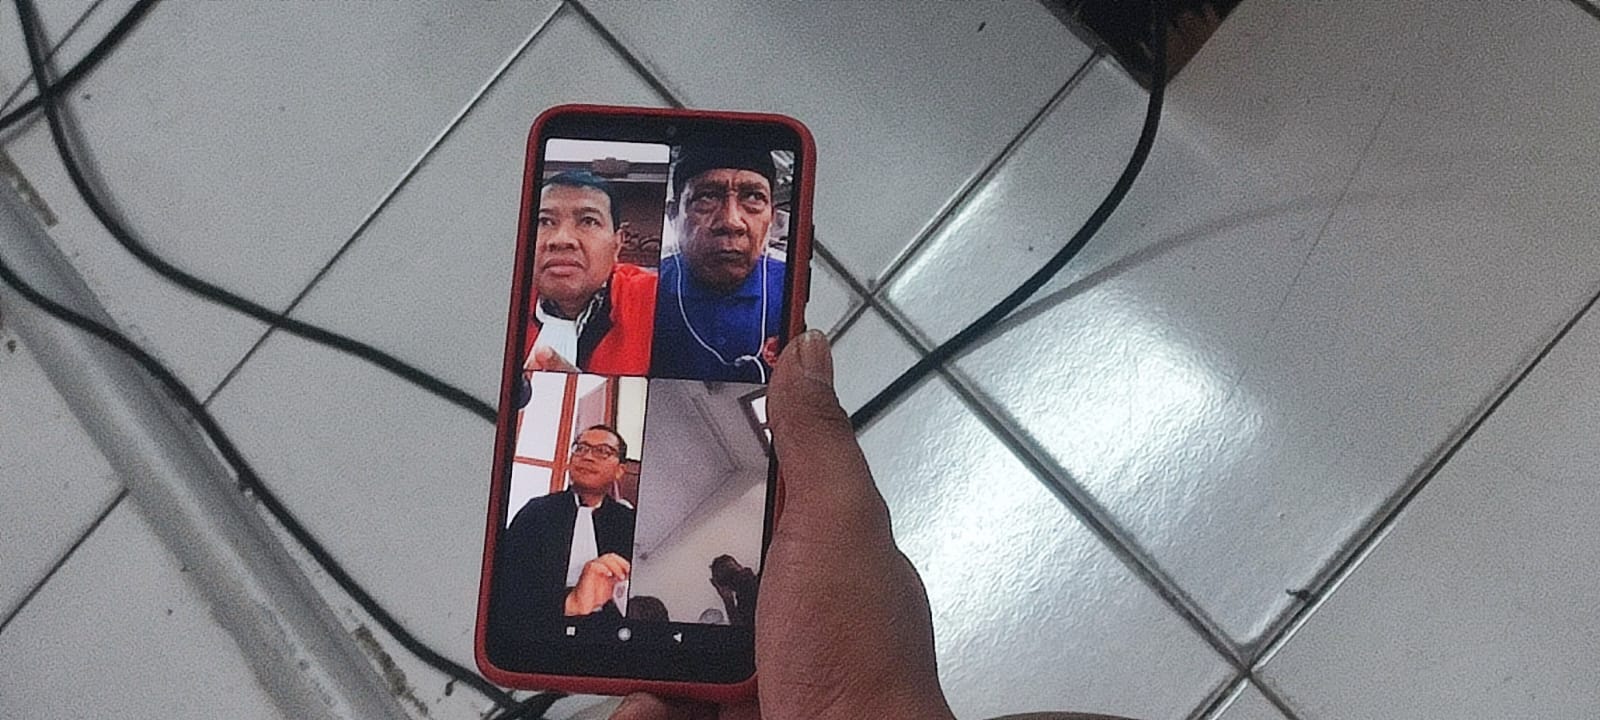 Asyik Nonton TV, Pria di Surabaya Ditangkap Polisi